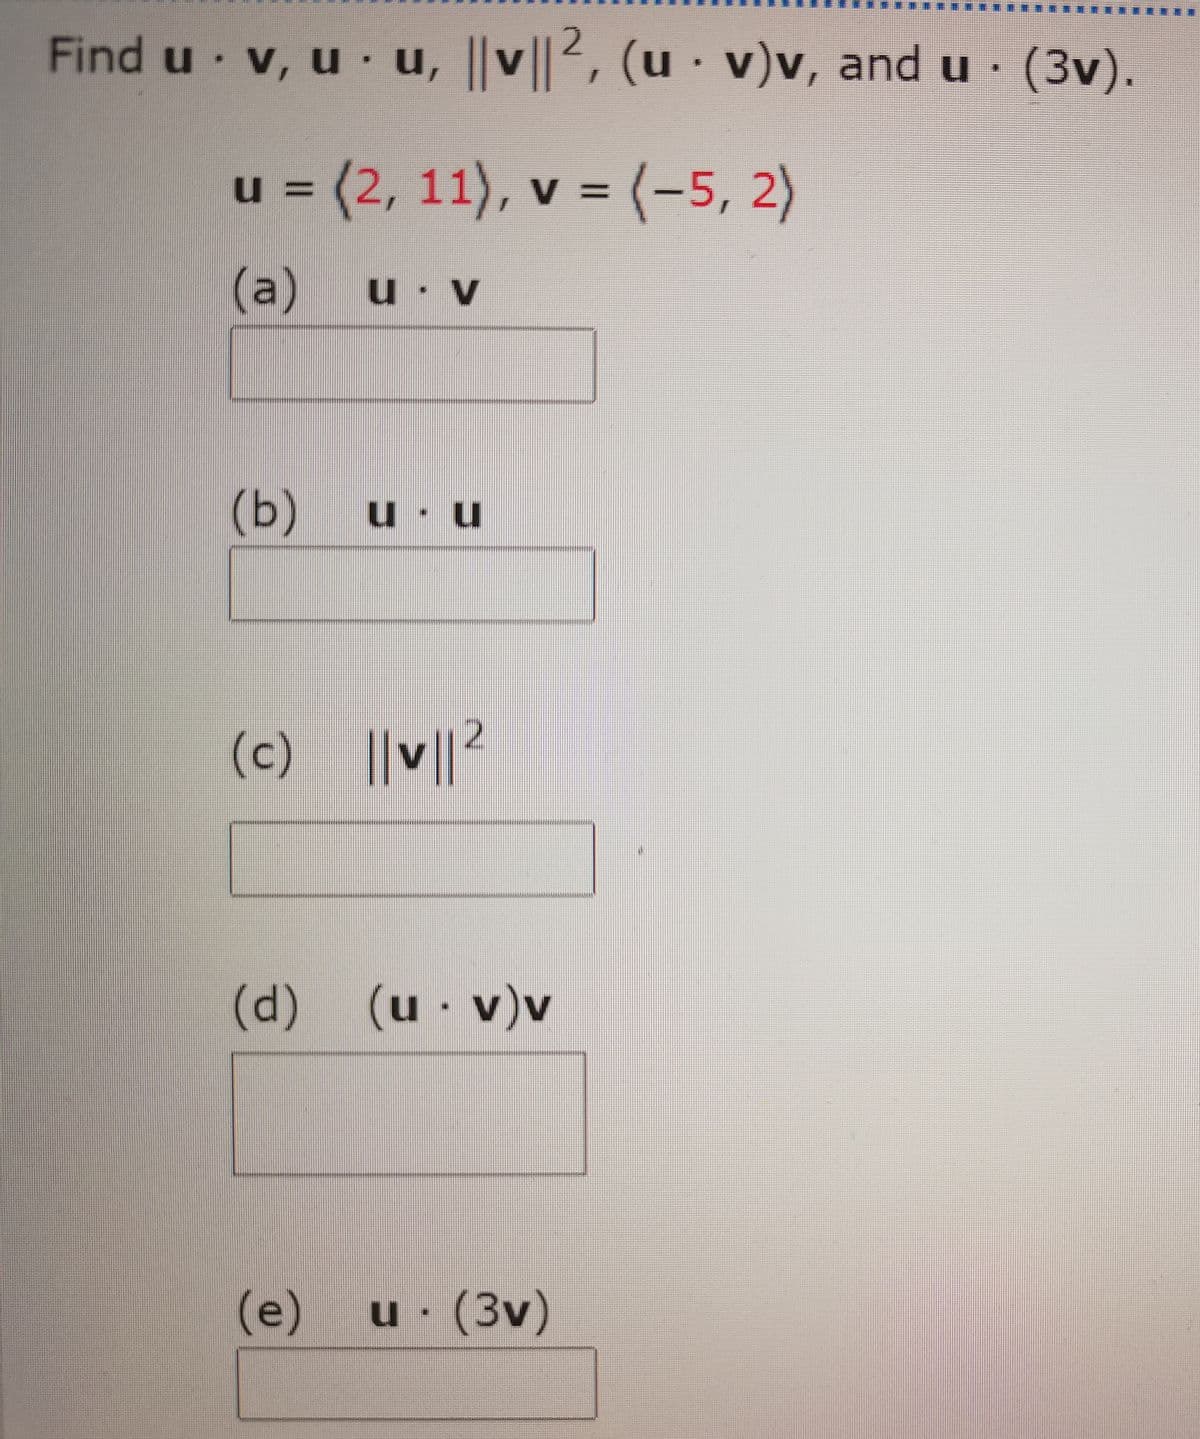 Find u v, u u, ||v||2, (u · v)v, and u· (3v).
V
u = (2, 11),
v = (-5, 2)
(a)
u V
(Ь)
u u
(c) ||v||
(d)(u
· v)v
(e)
u (3v)
